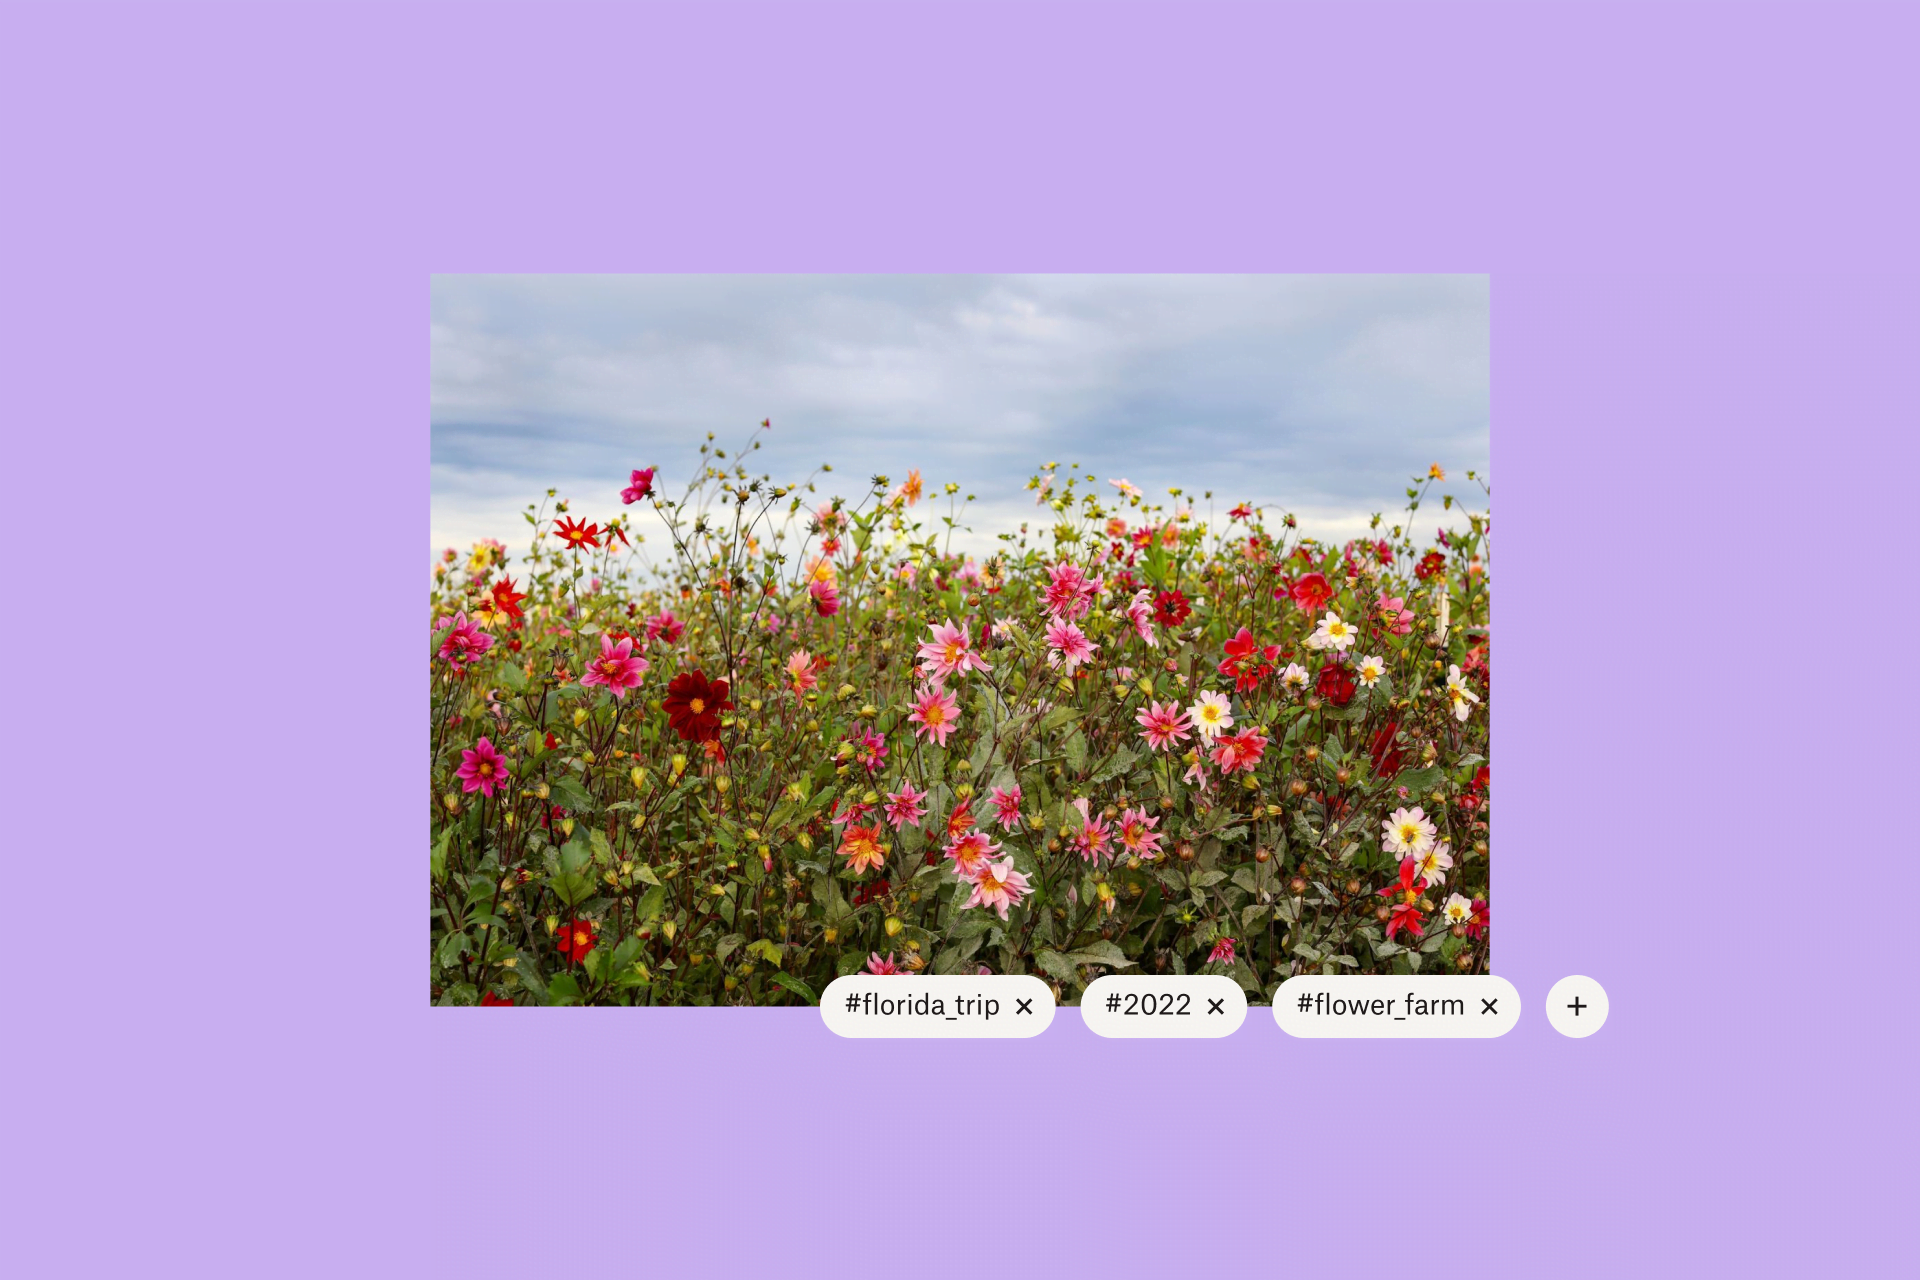 Fotografía de flores con etiquetas digitales